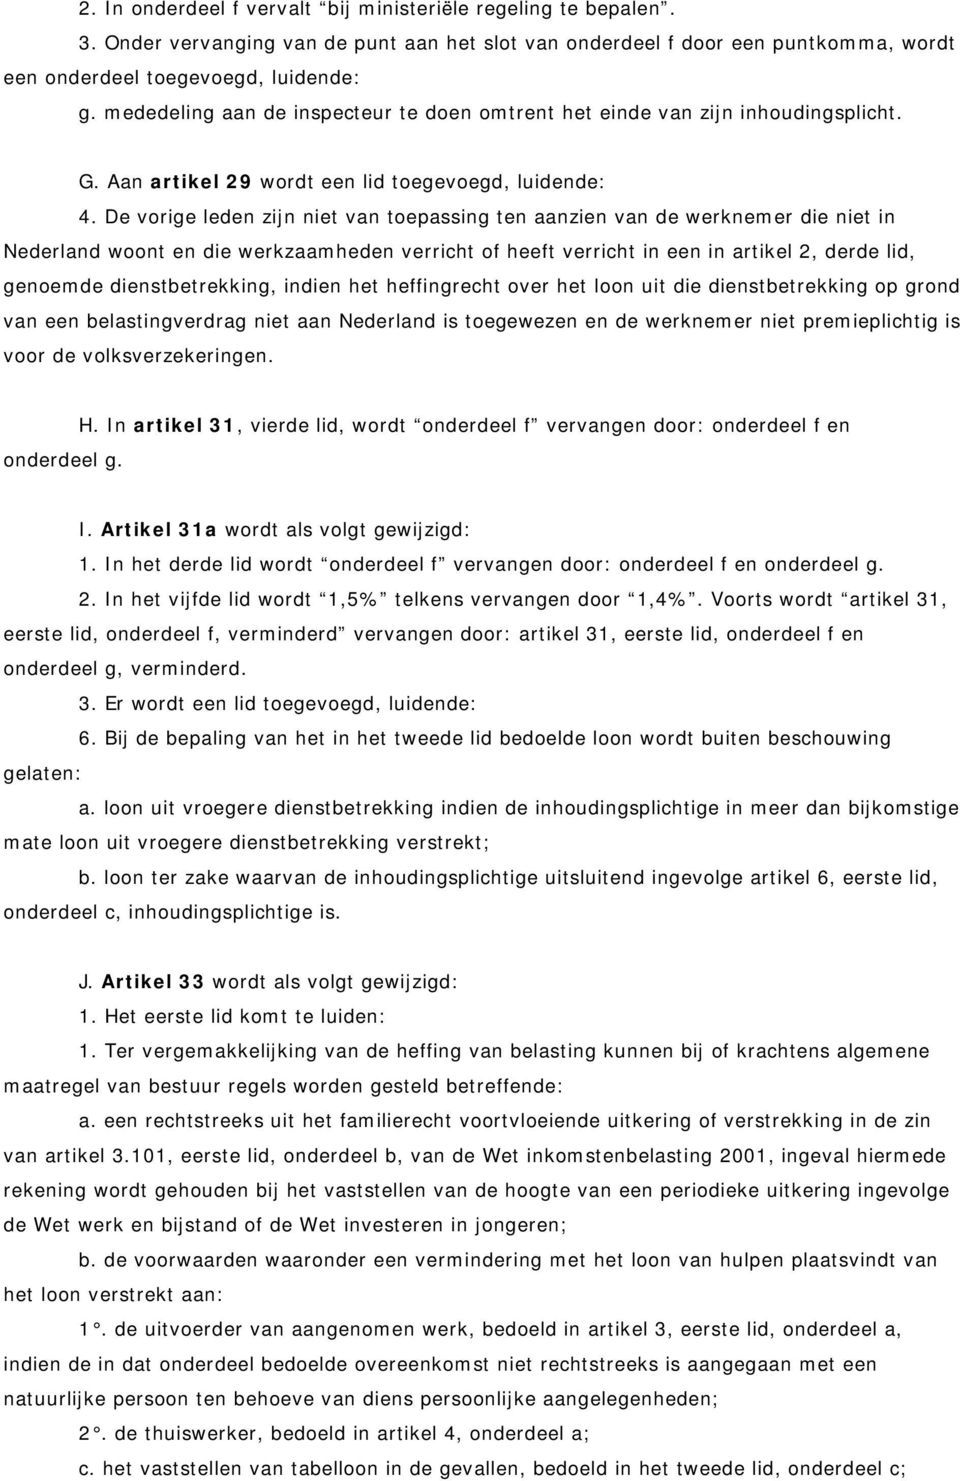 De vorige leden zijn niet van toepassing ten aanzien van de werknemer die niet in Nederland woont en die werkzaamheden verricht of heeft verricht in een in artikel 2, derde lid, genoemde